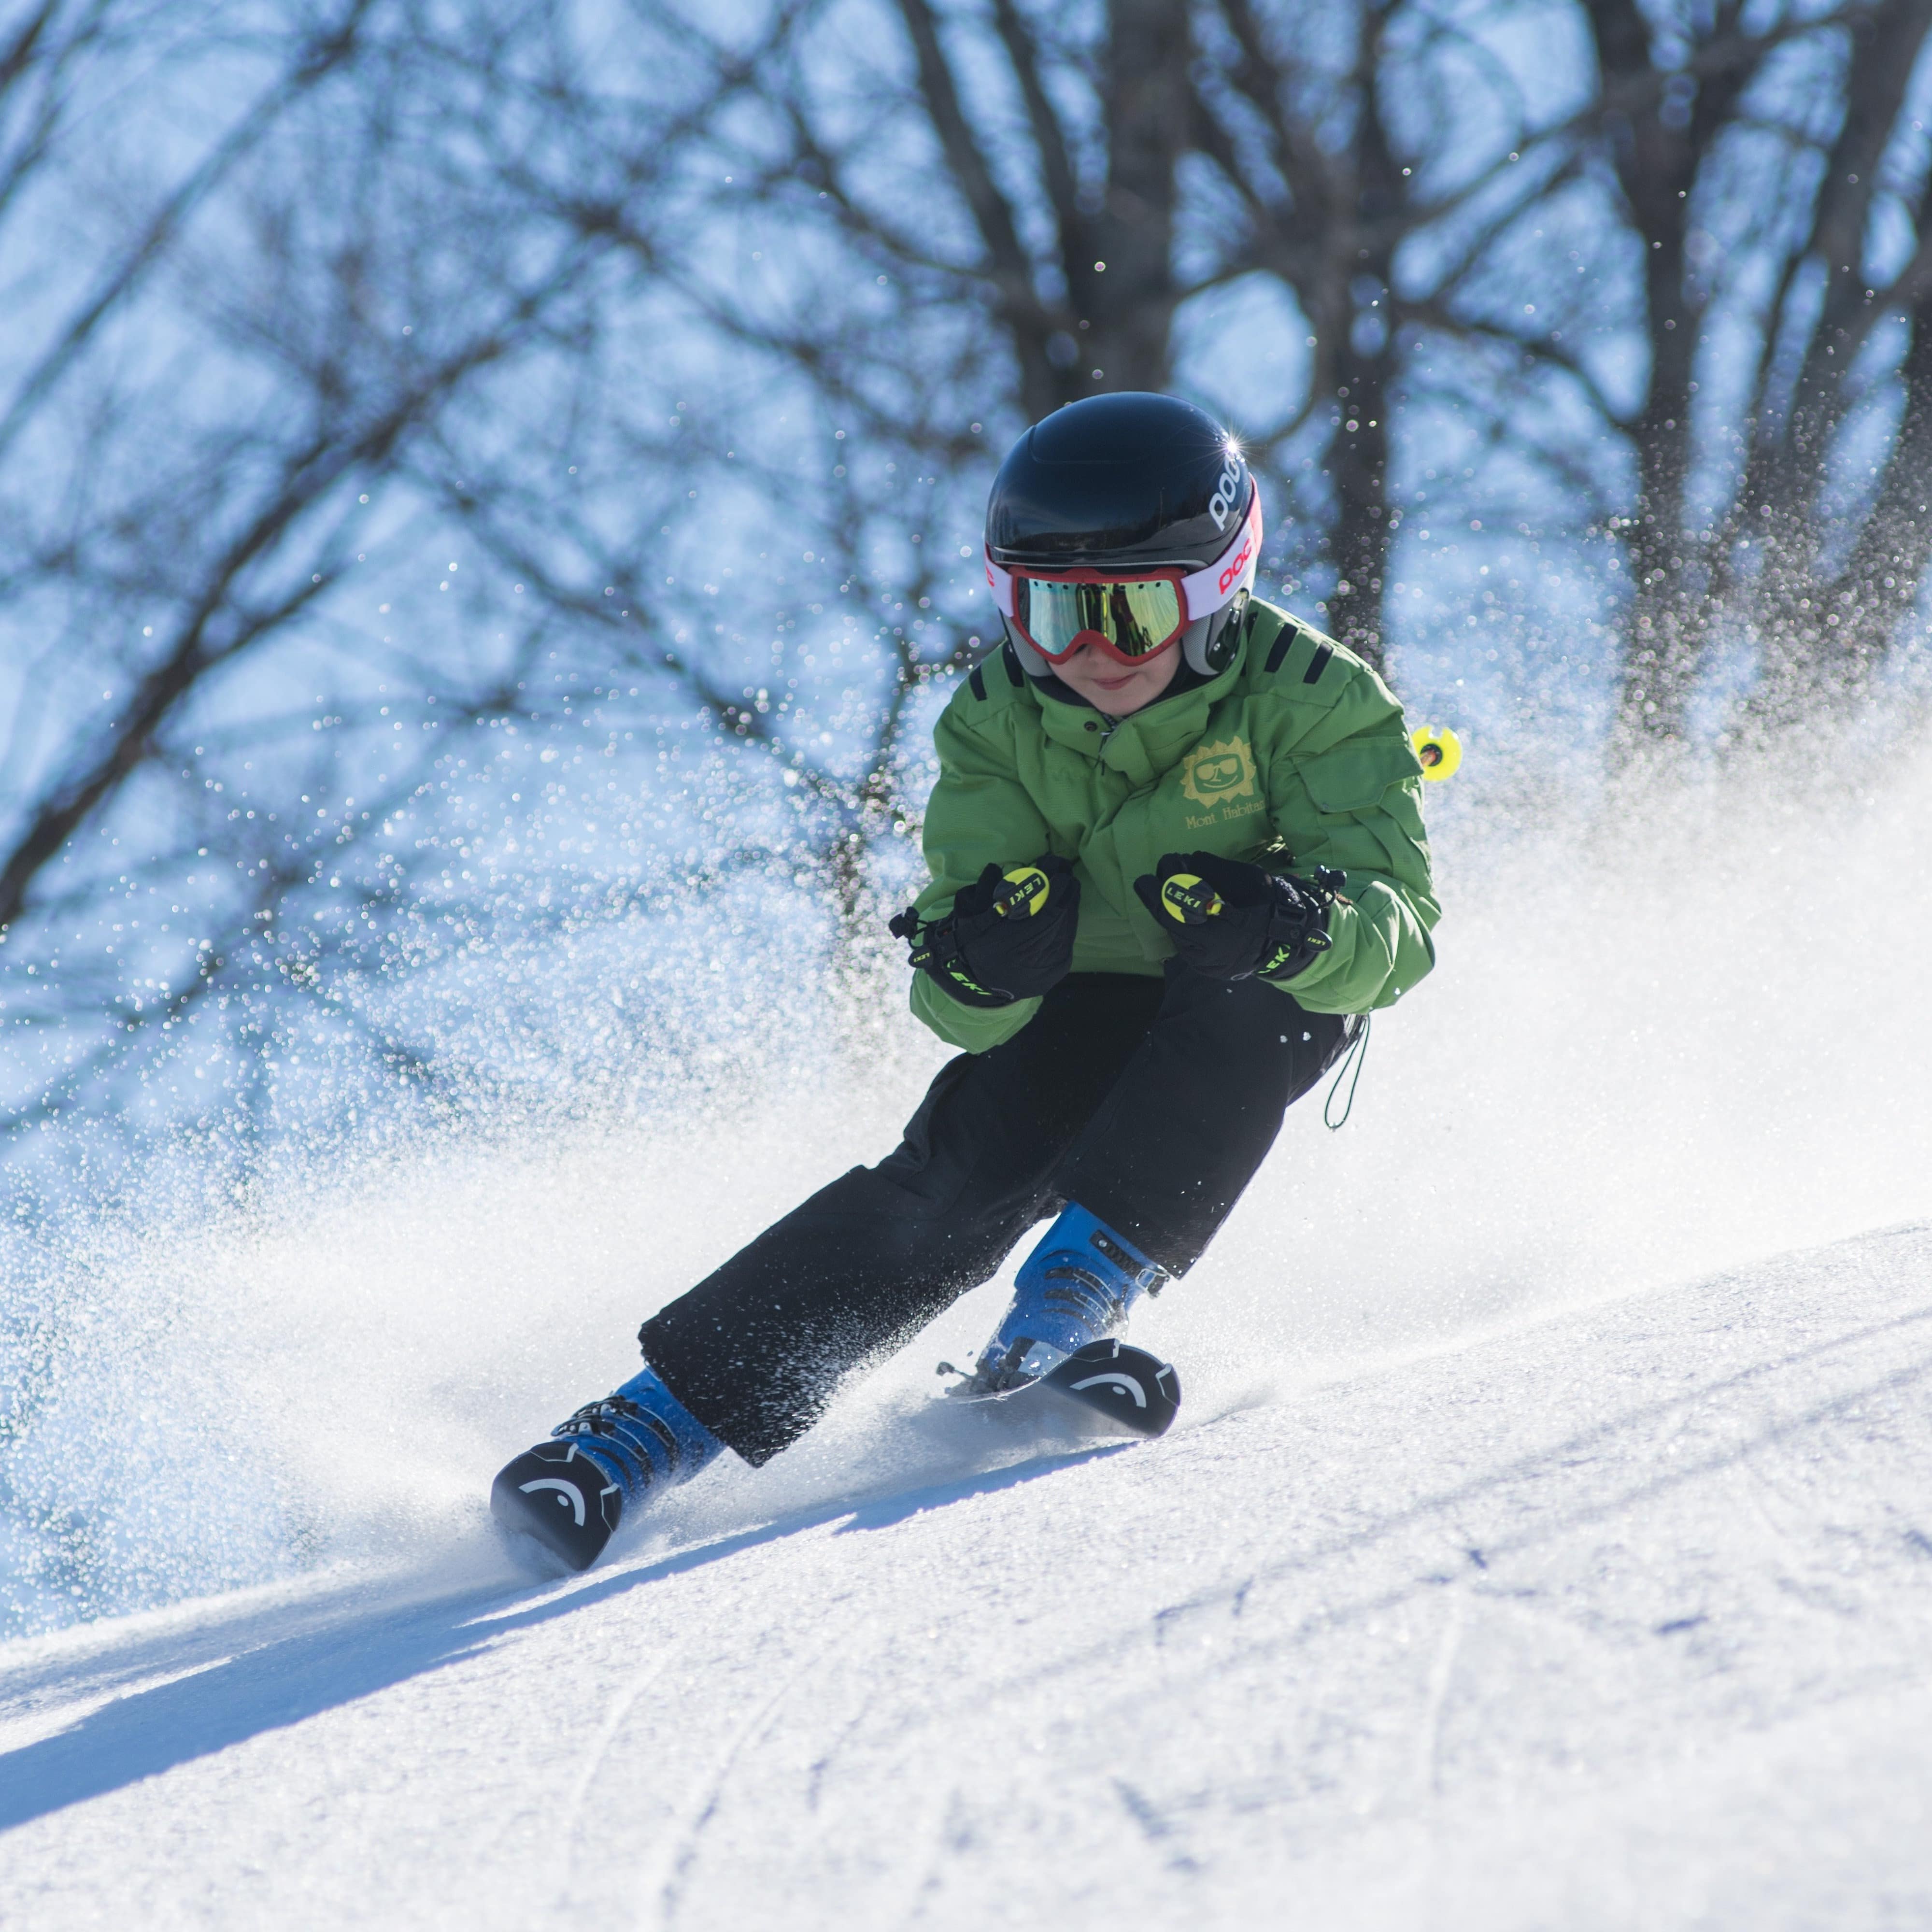 Ein Kind mit fortgeschrittenen Fähigkeiten auf Skiern.